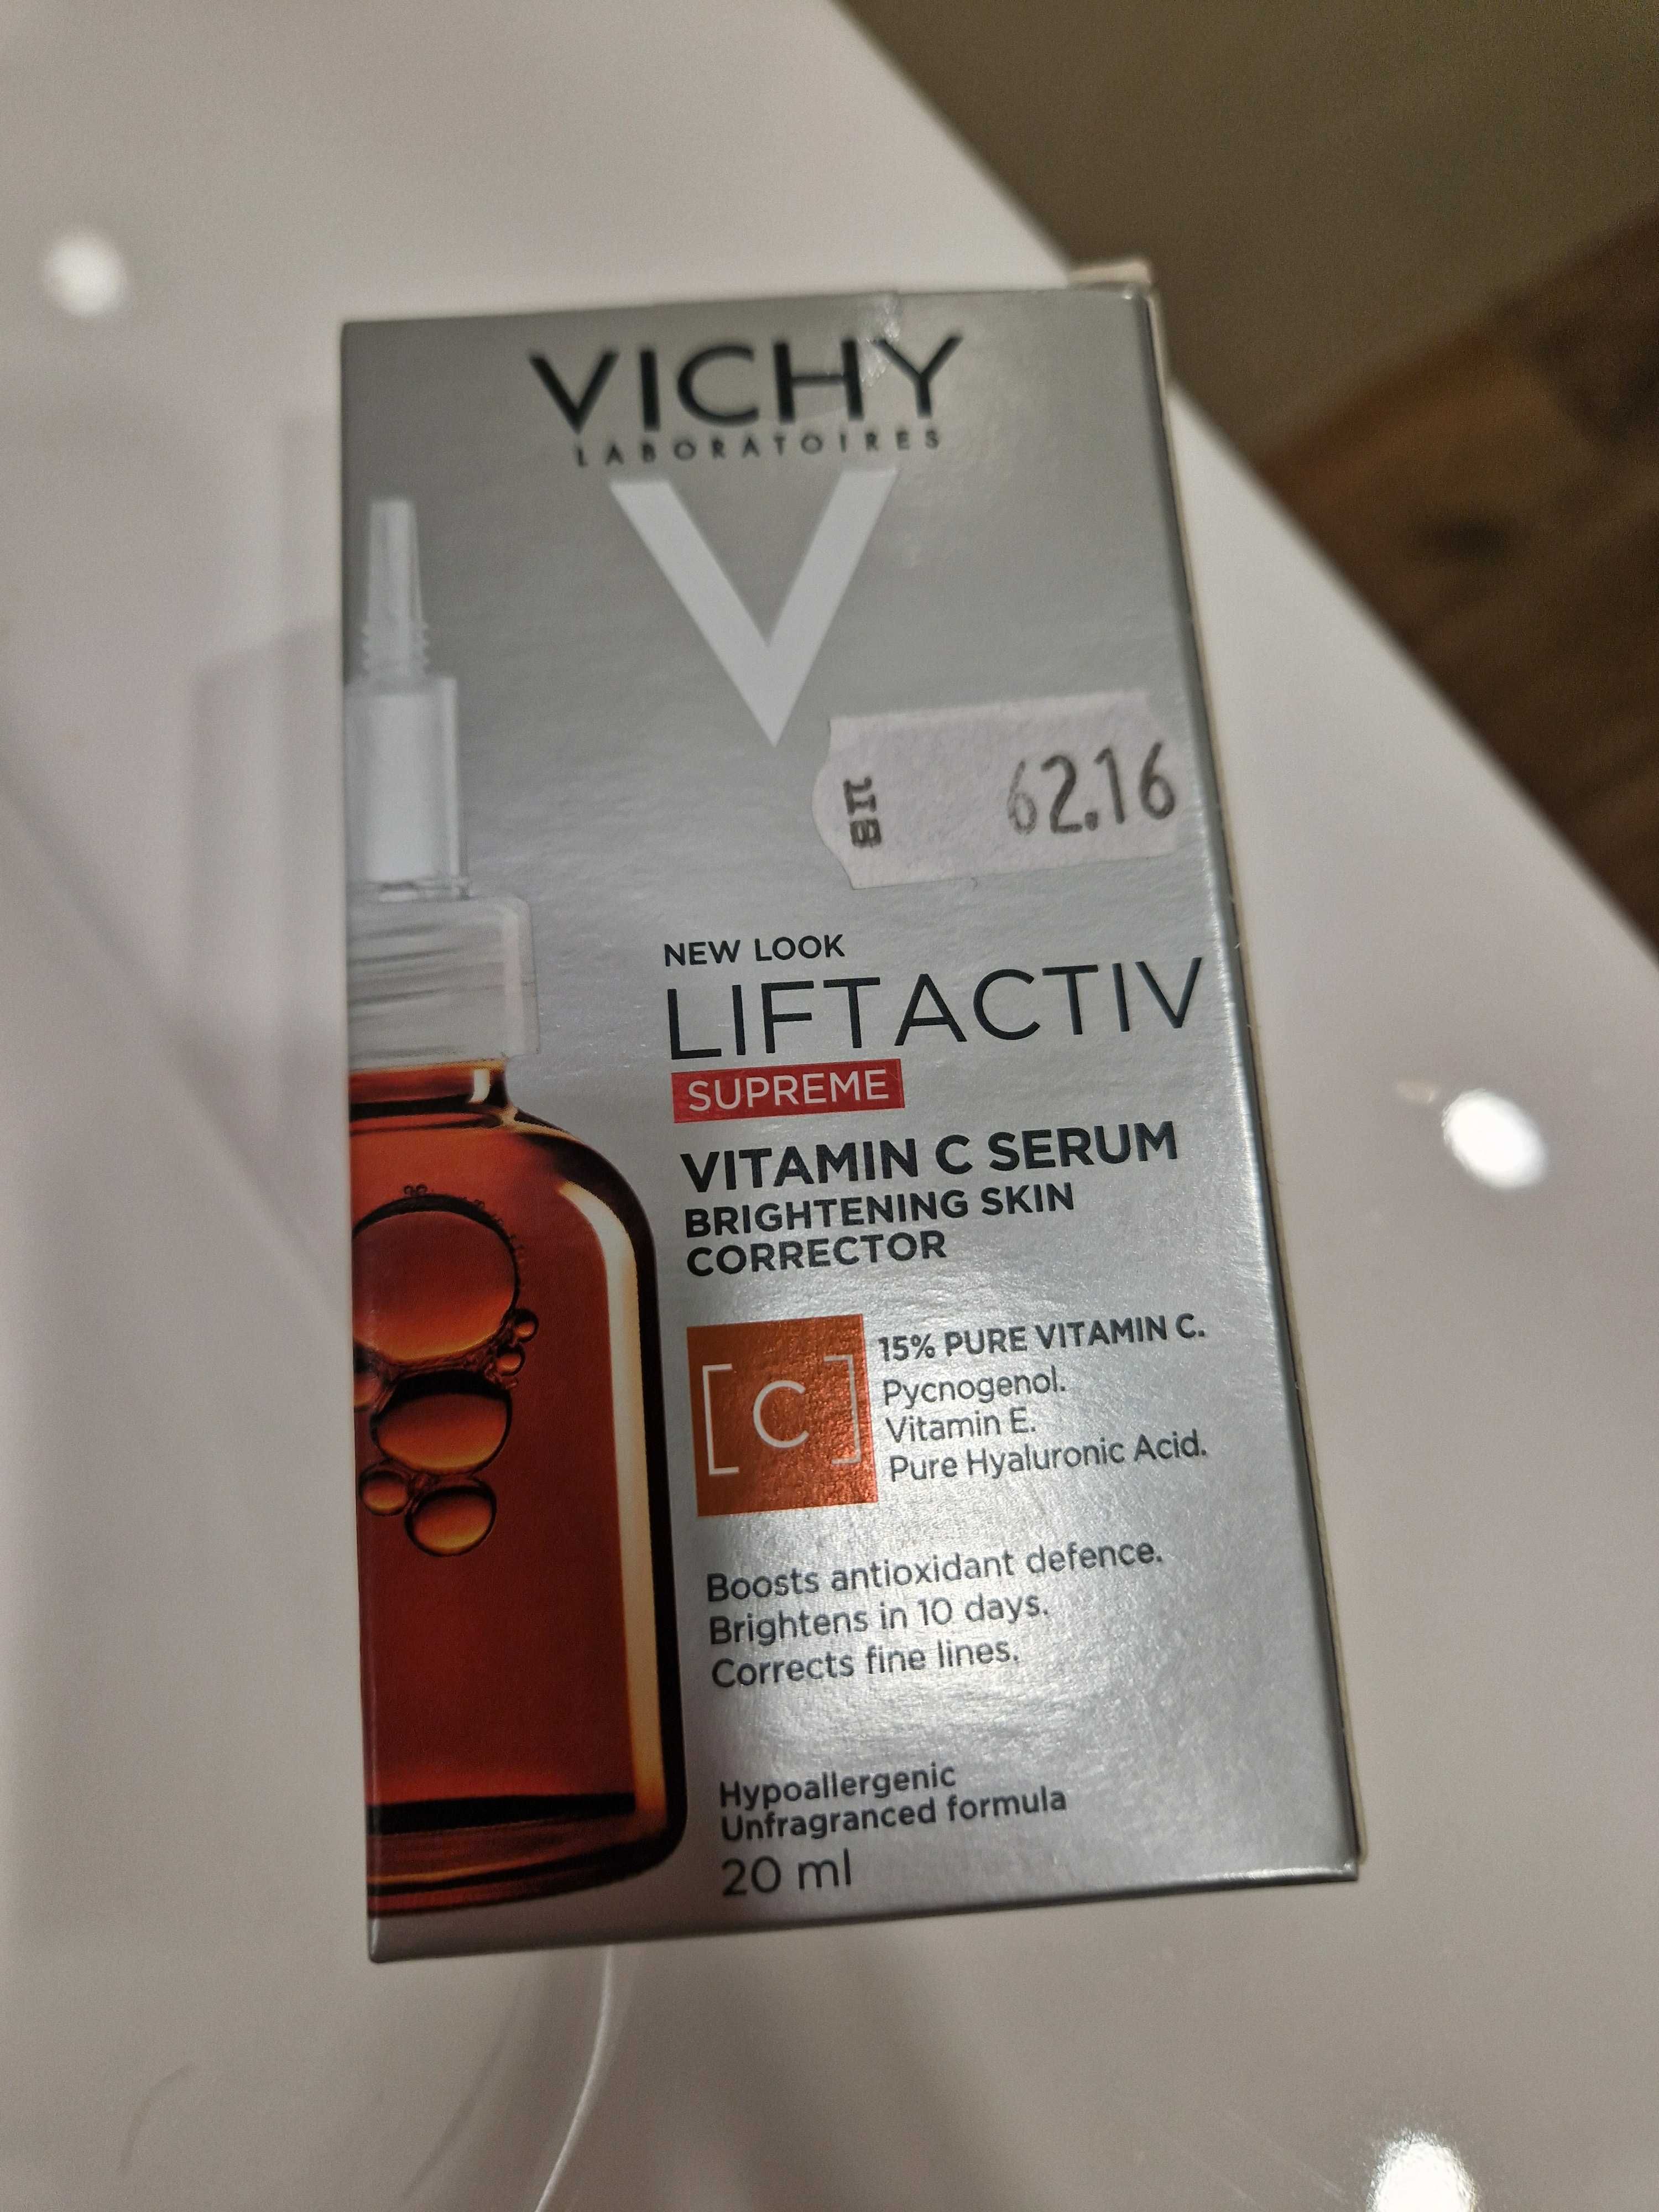 LIFTACTIV Supreme серум витамин С на Vichy